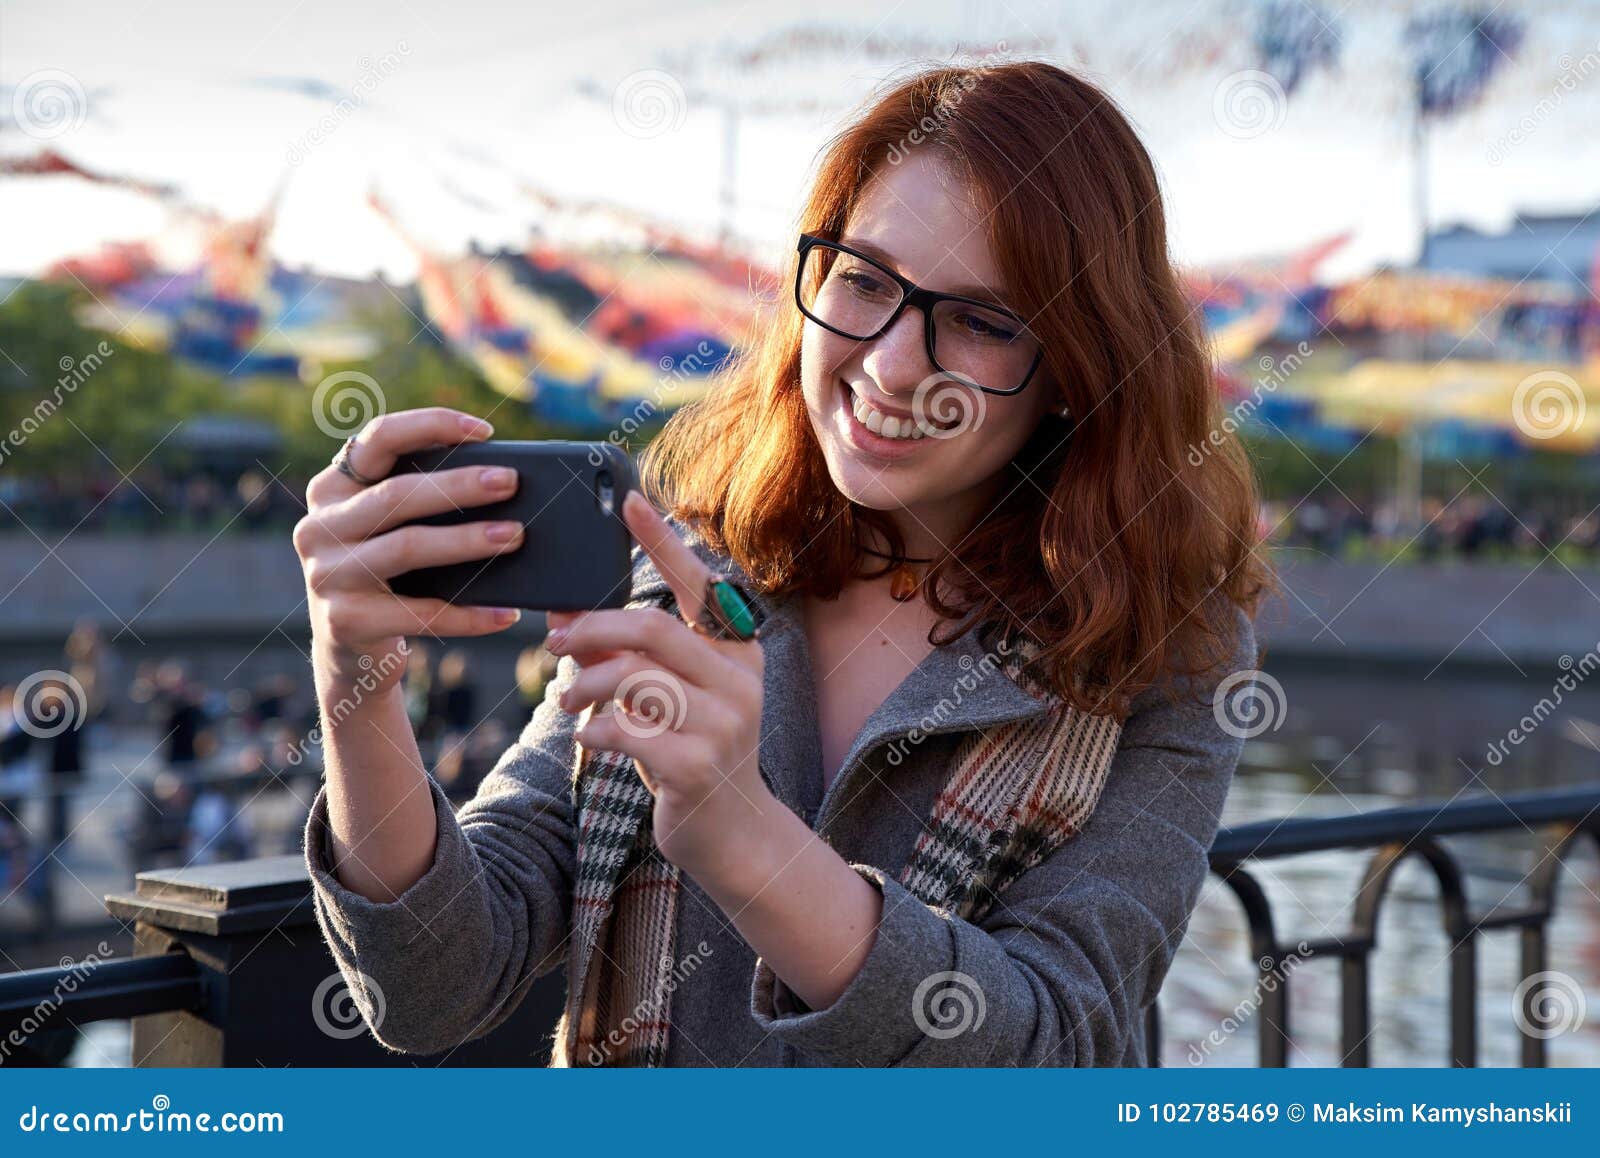 outdoor selfie redhead